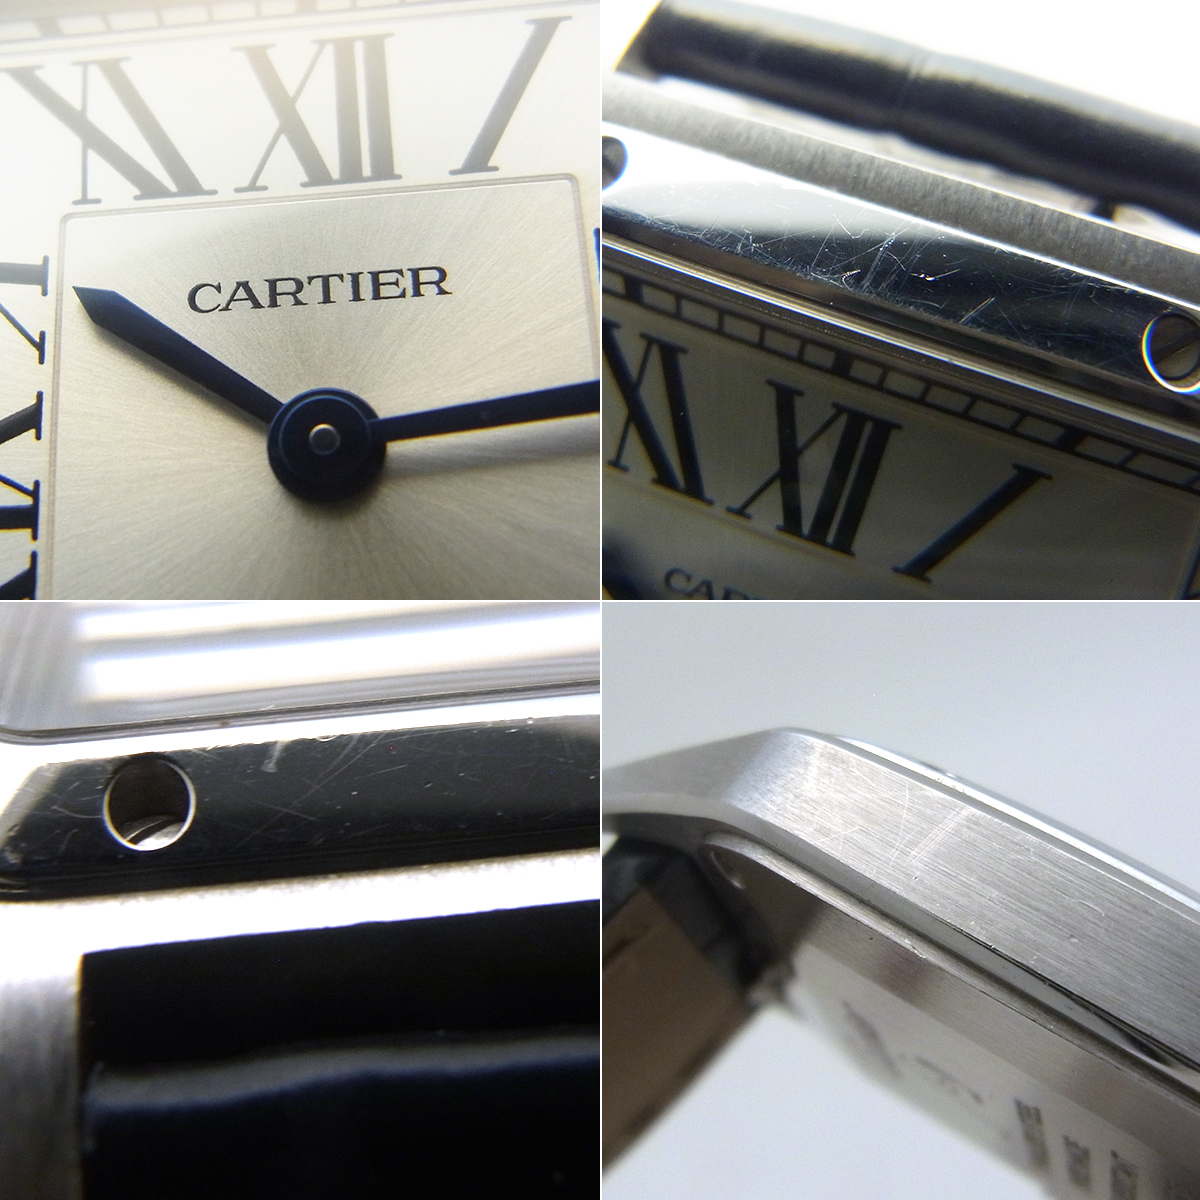 カルティエ(Cartier) サントスデュモンSM レディース 腕時計 WSSA0023 アリゲーター シルバー文字盤